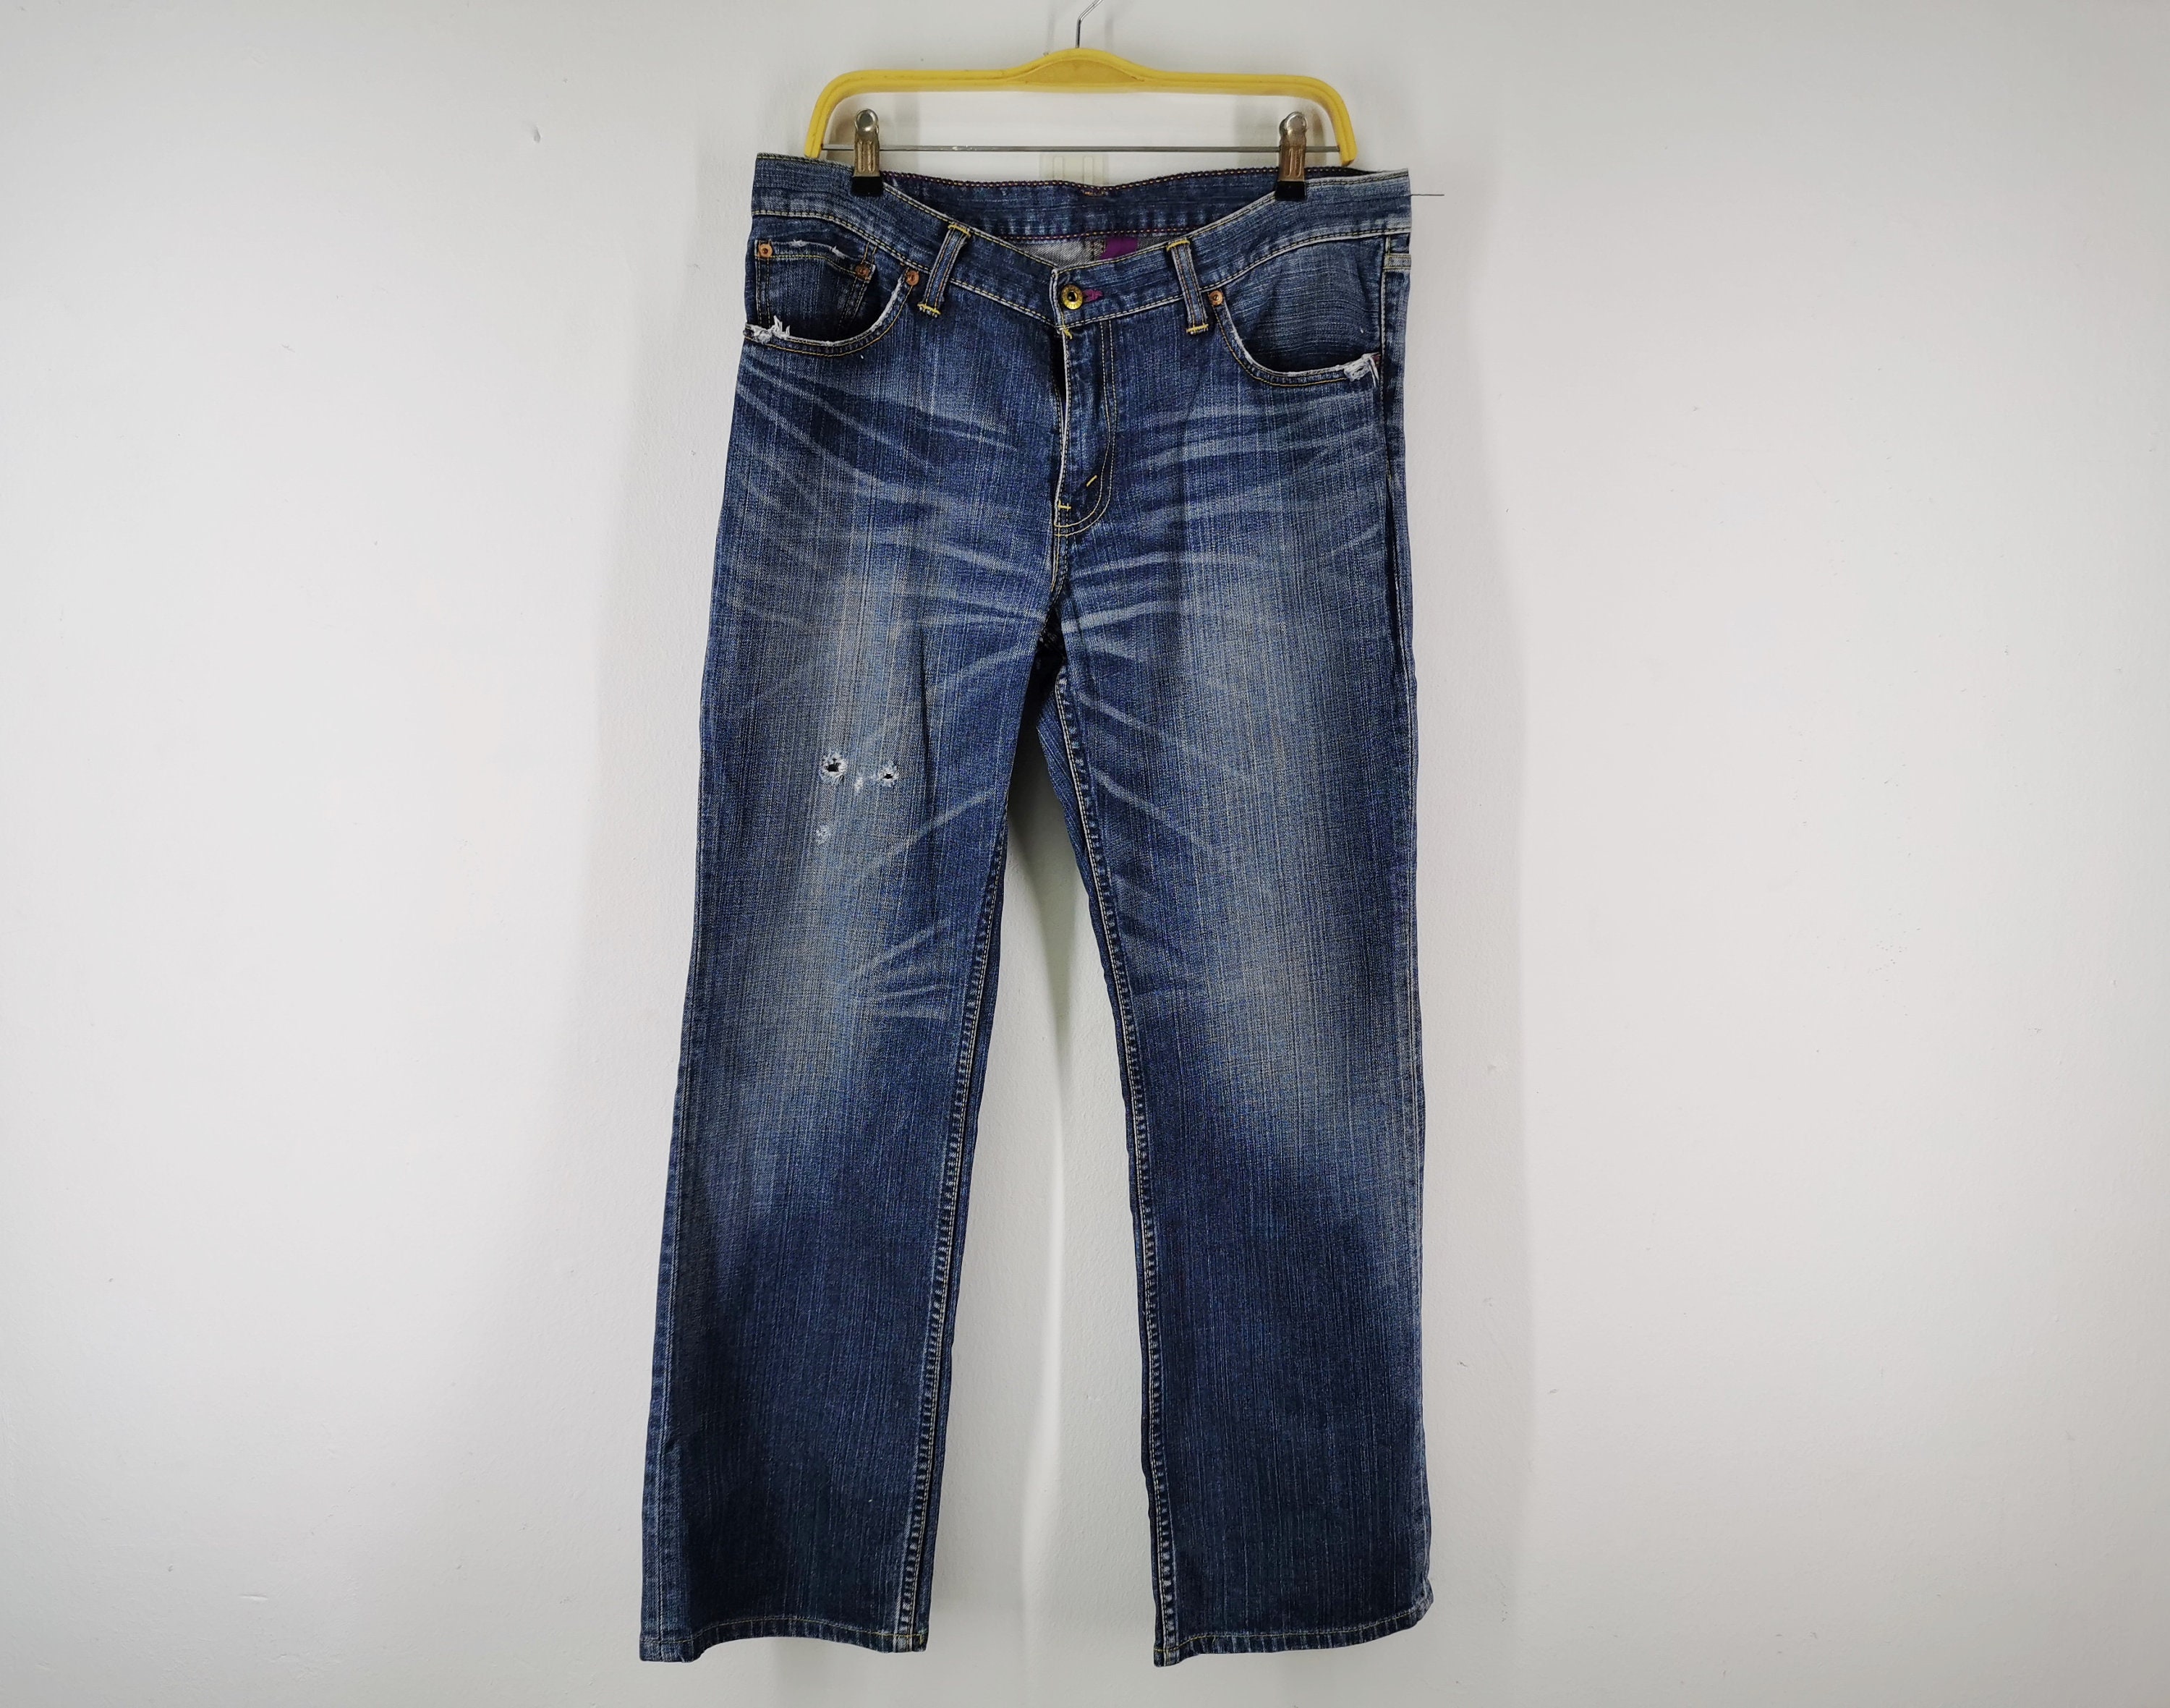 Levis 507 Jeans Distressed Vintage Size 36 Levis 507 Denim | Etsy